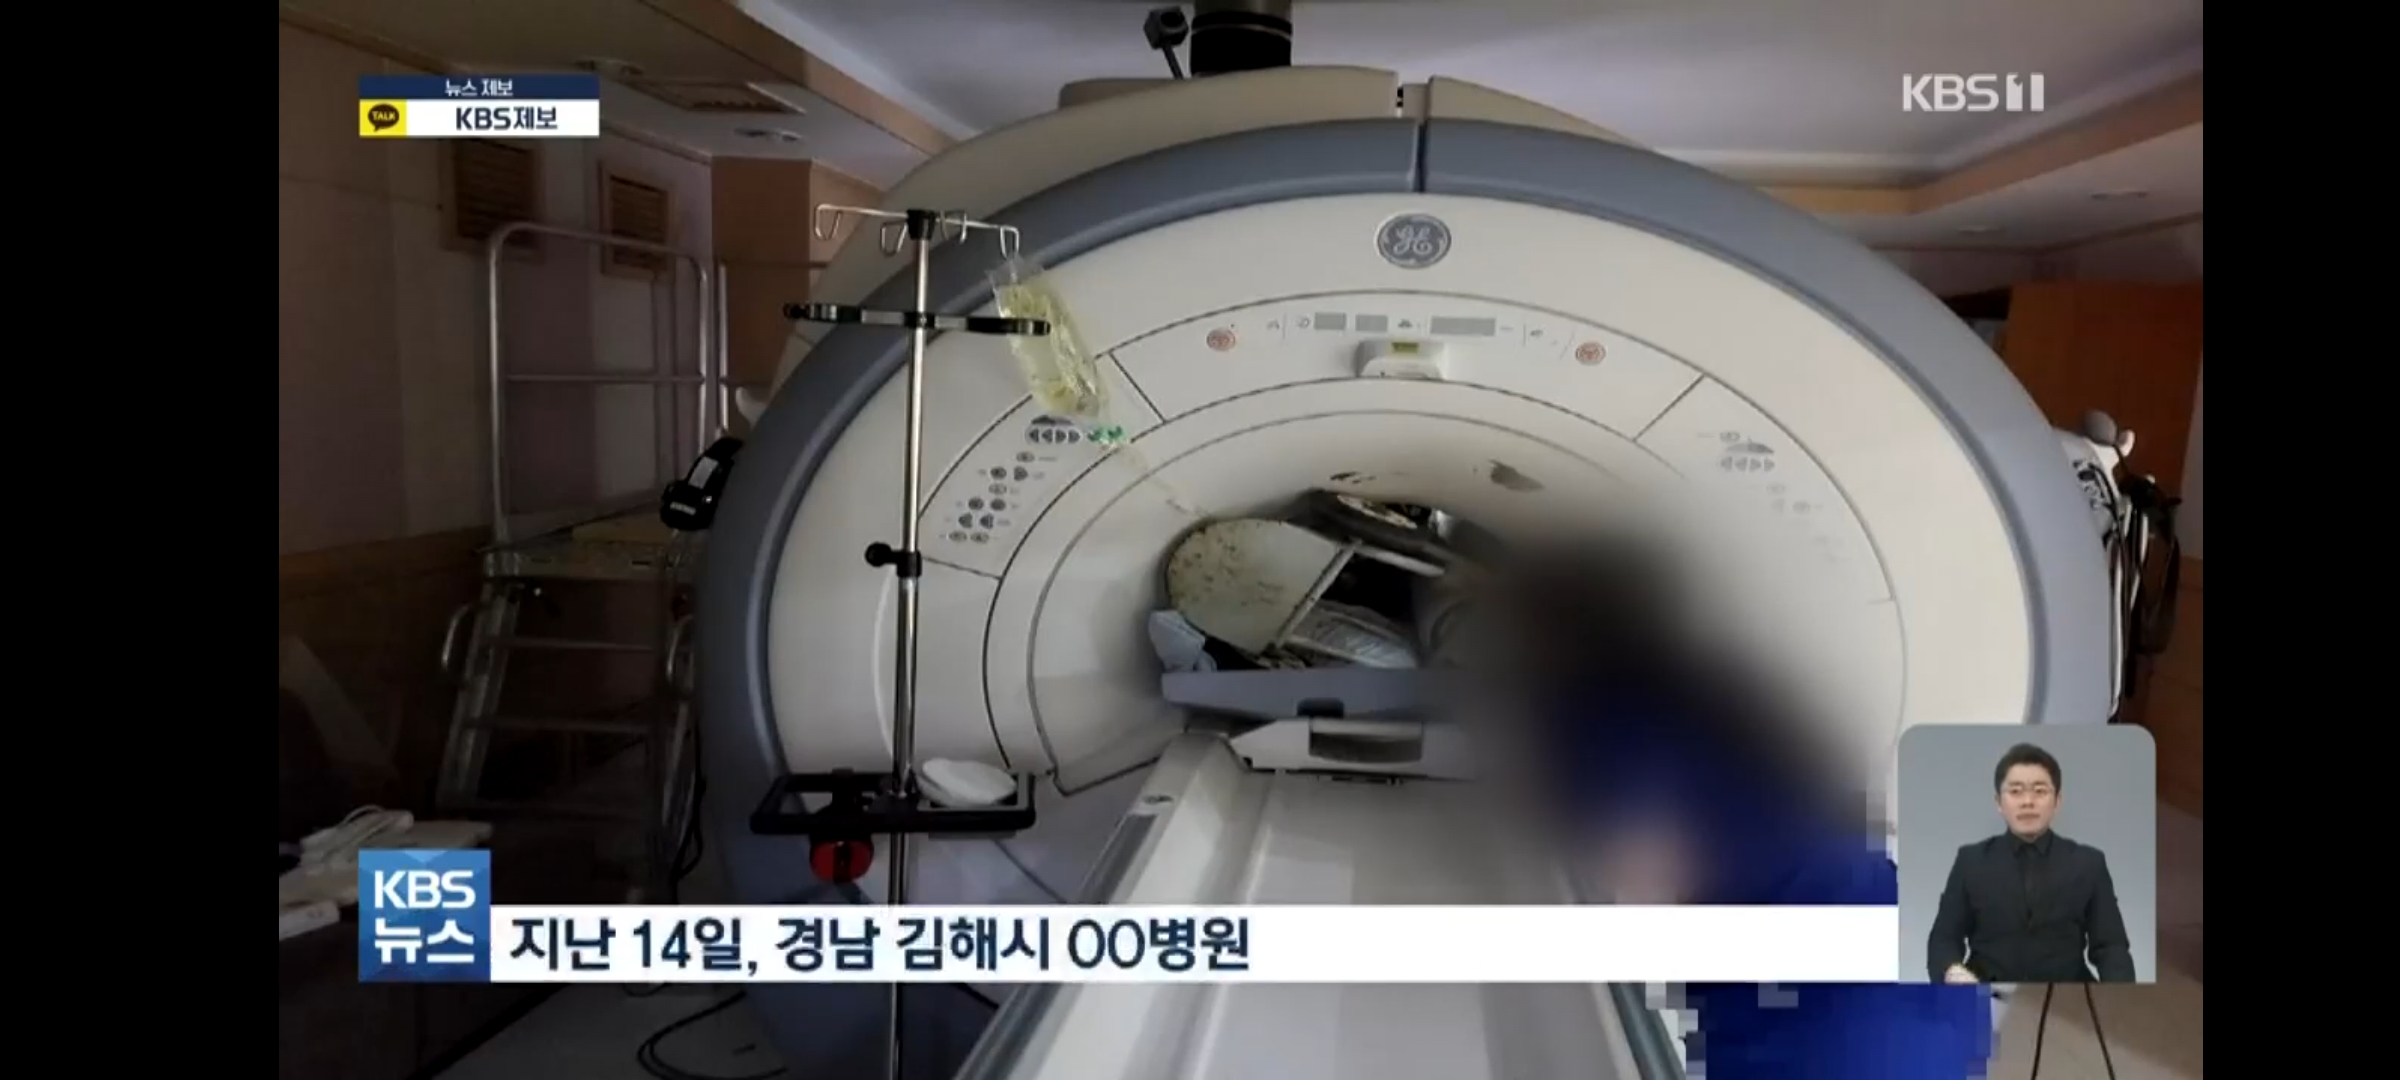 MRI 기기에 산소통과 환자가 끼인 사고 사진